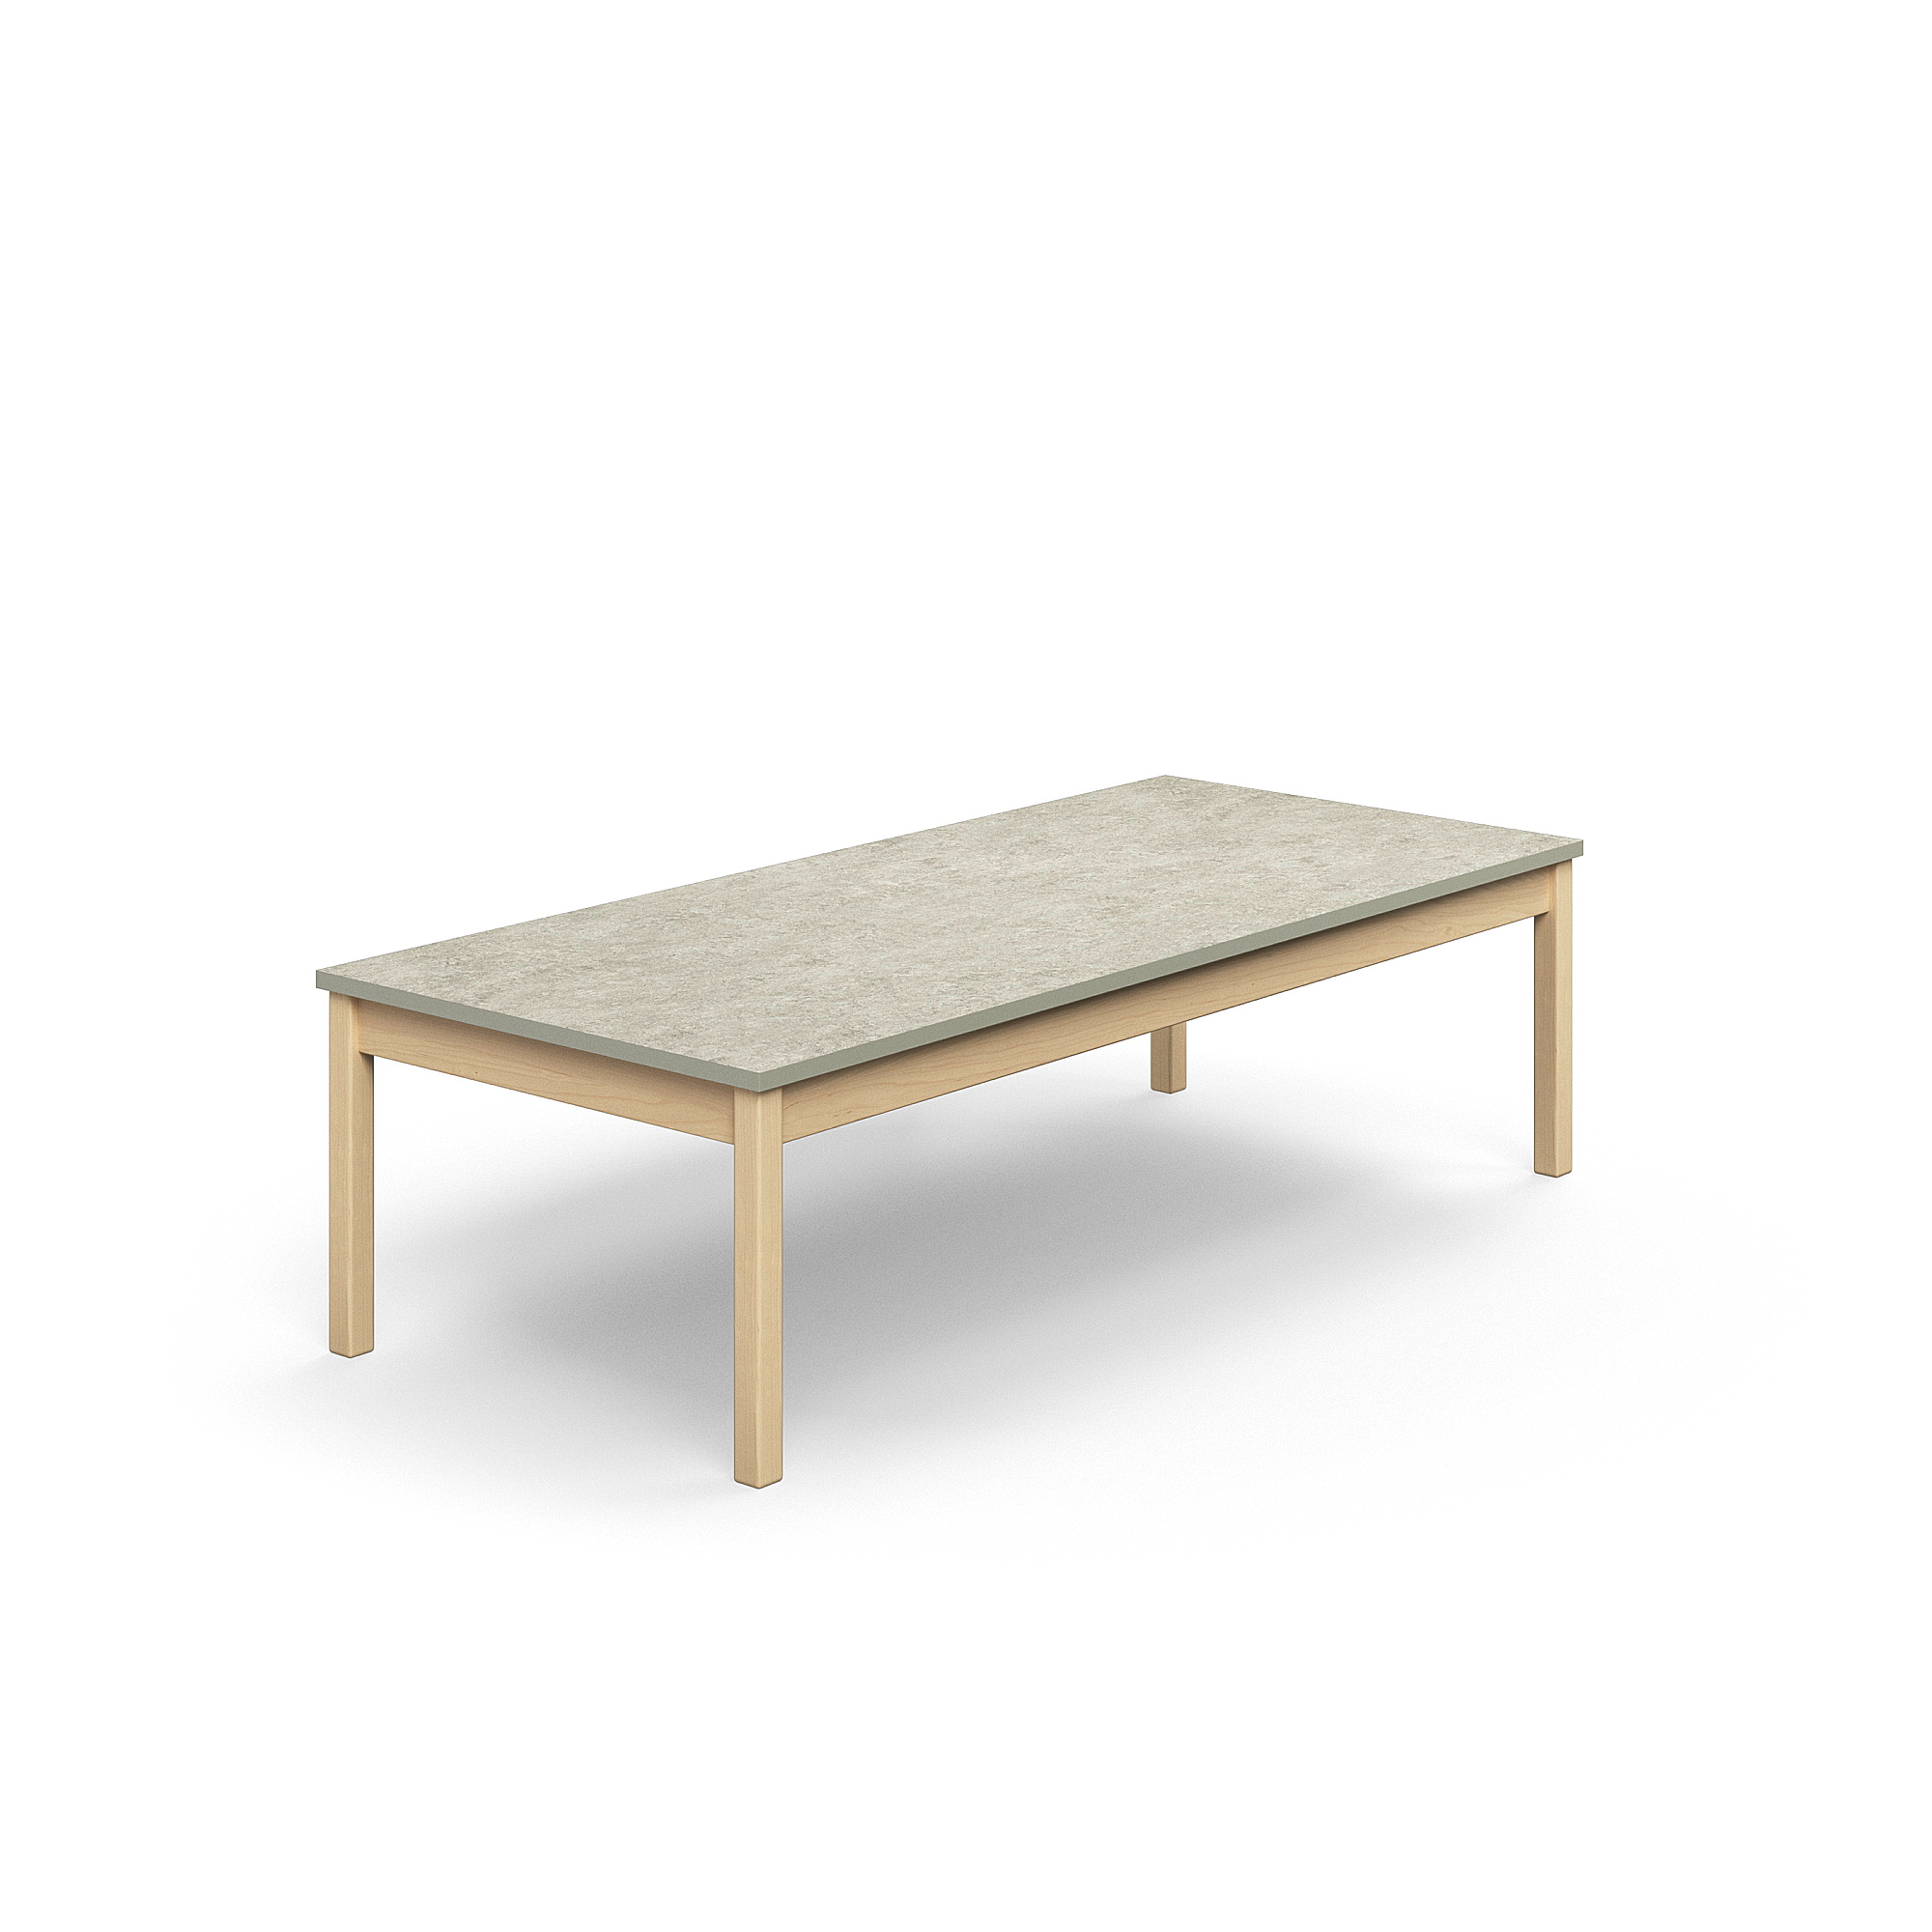 Stůl DECIBEL, 1800x800x530 mm, akustické linoleum, bříza/šedá